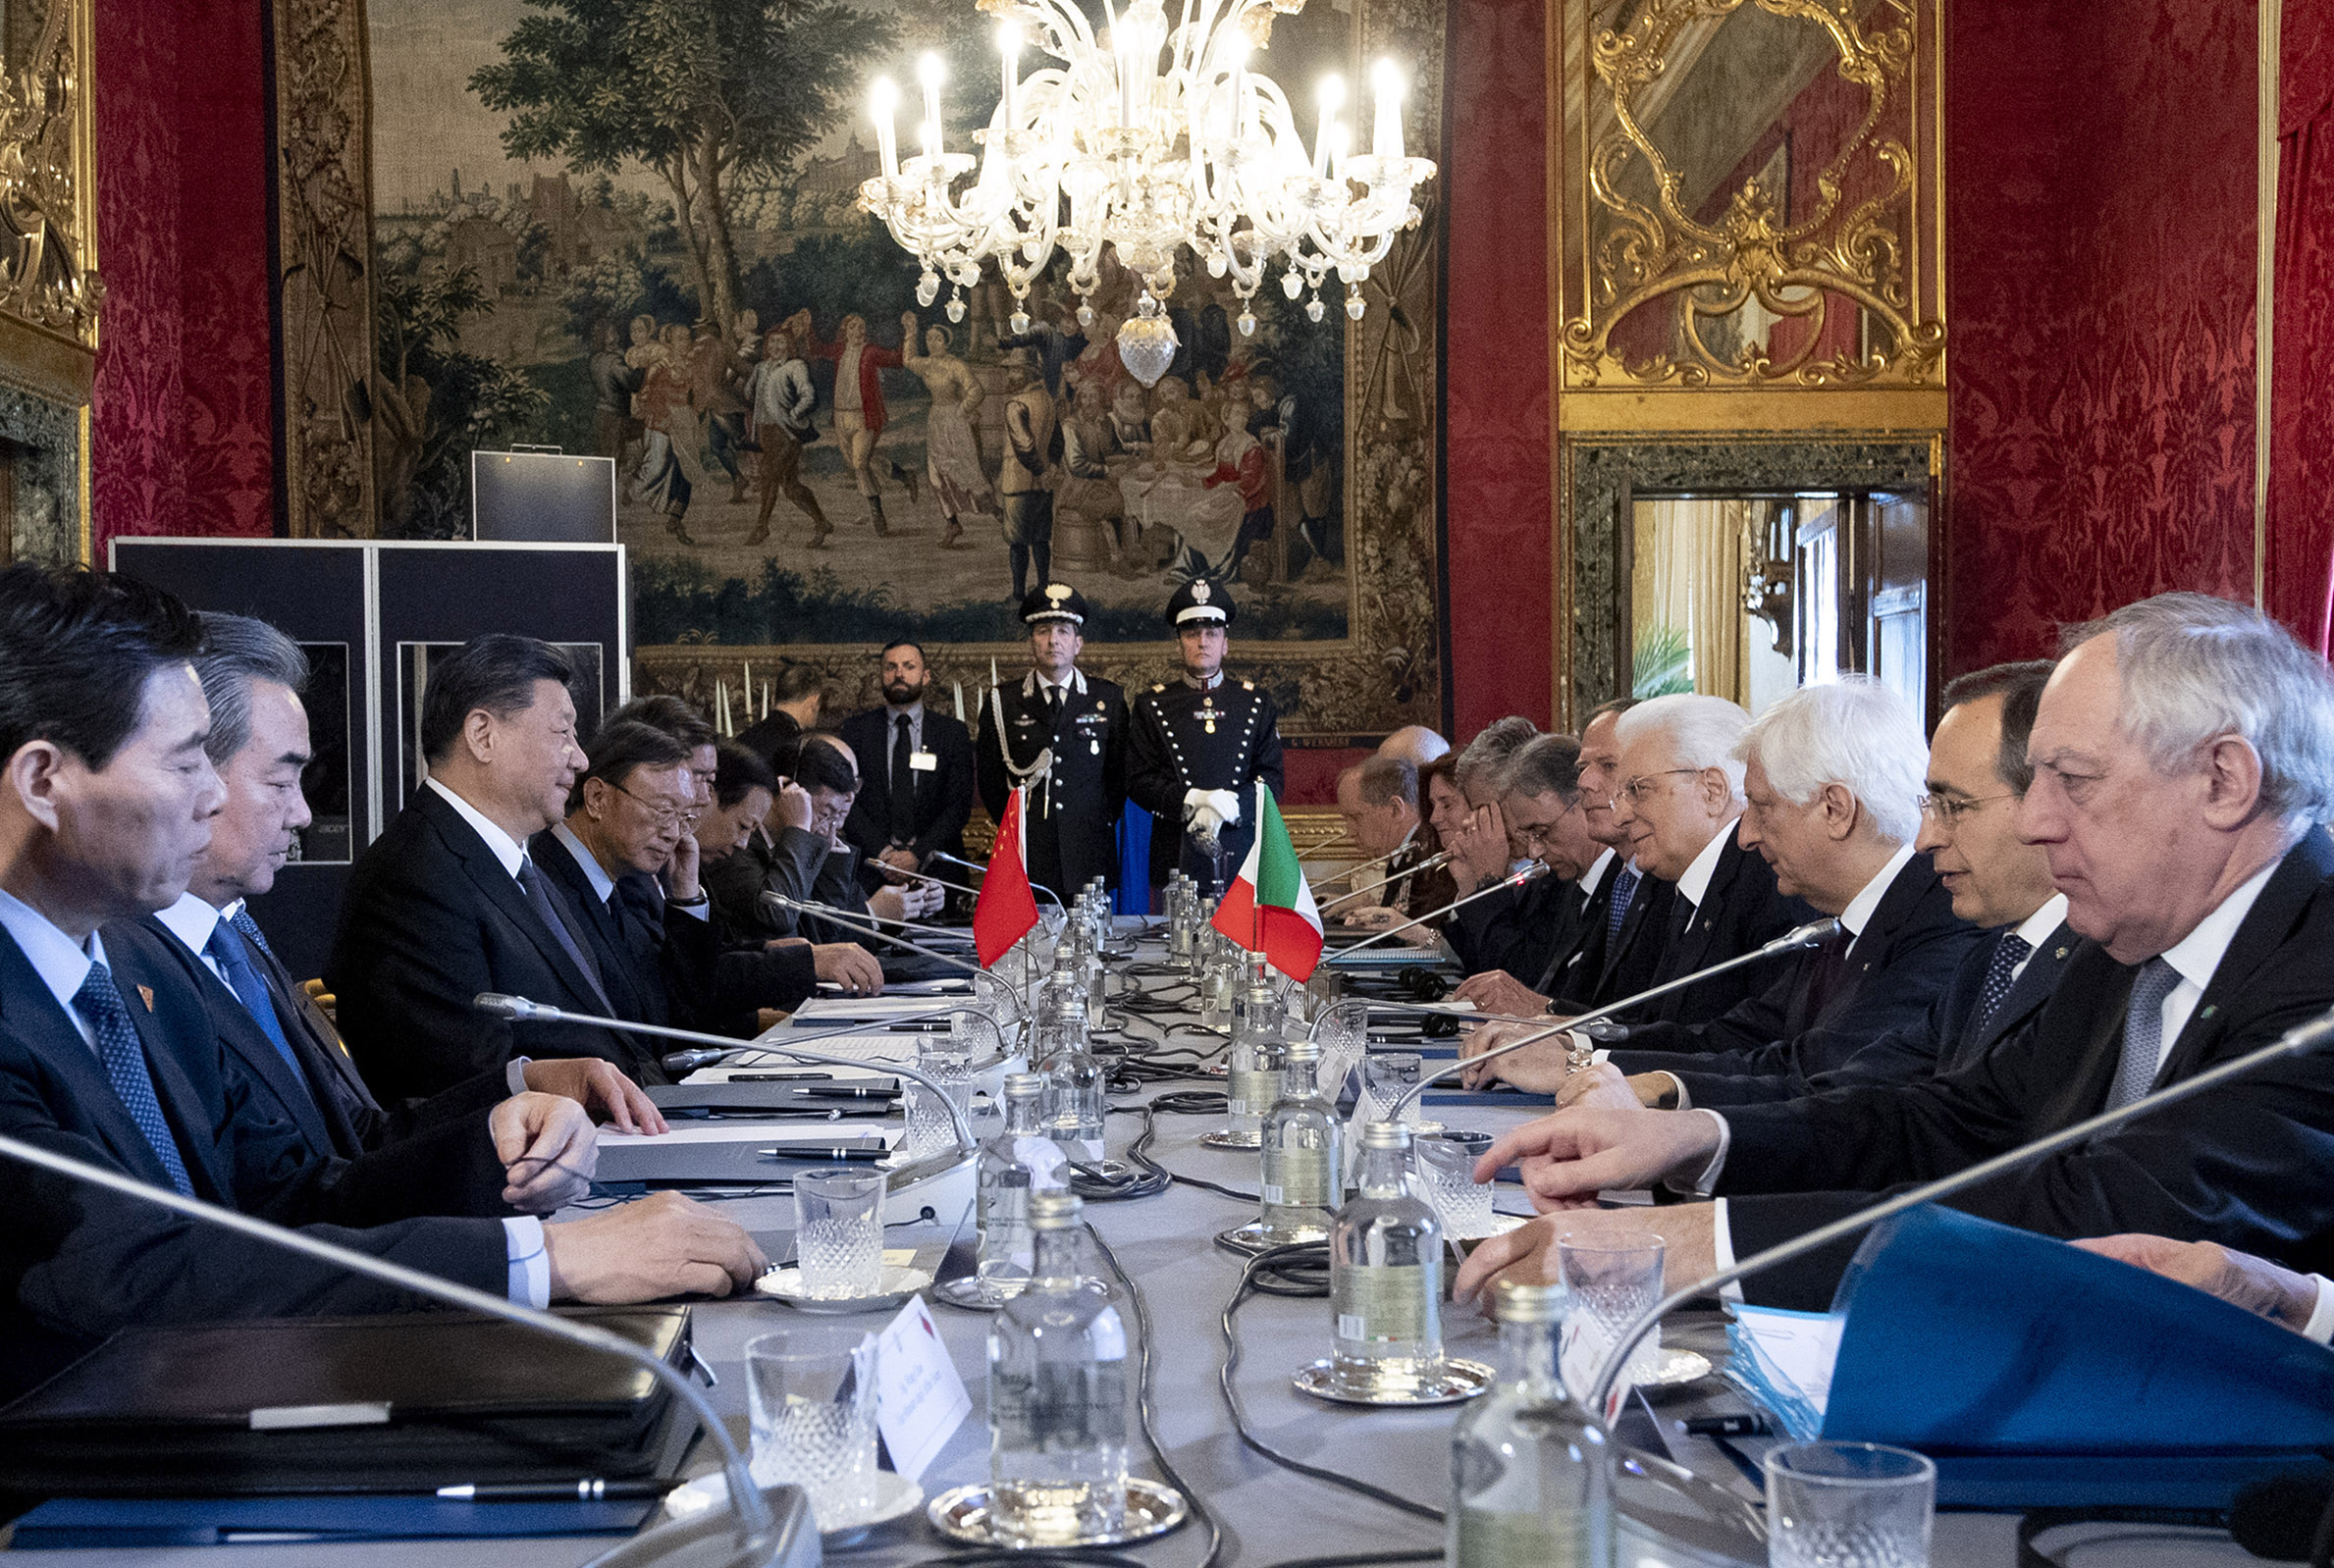 اجتماع الوفدين الايطالي والصيني برئاسة رئيسي البلدين في مستهل زيارة الدولة للرئيس الصيني في روما اليوم
